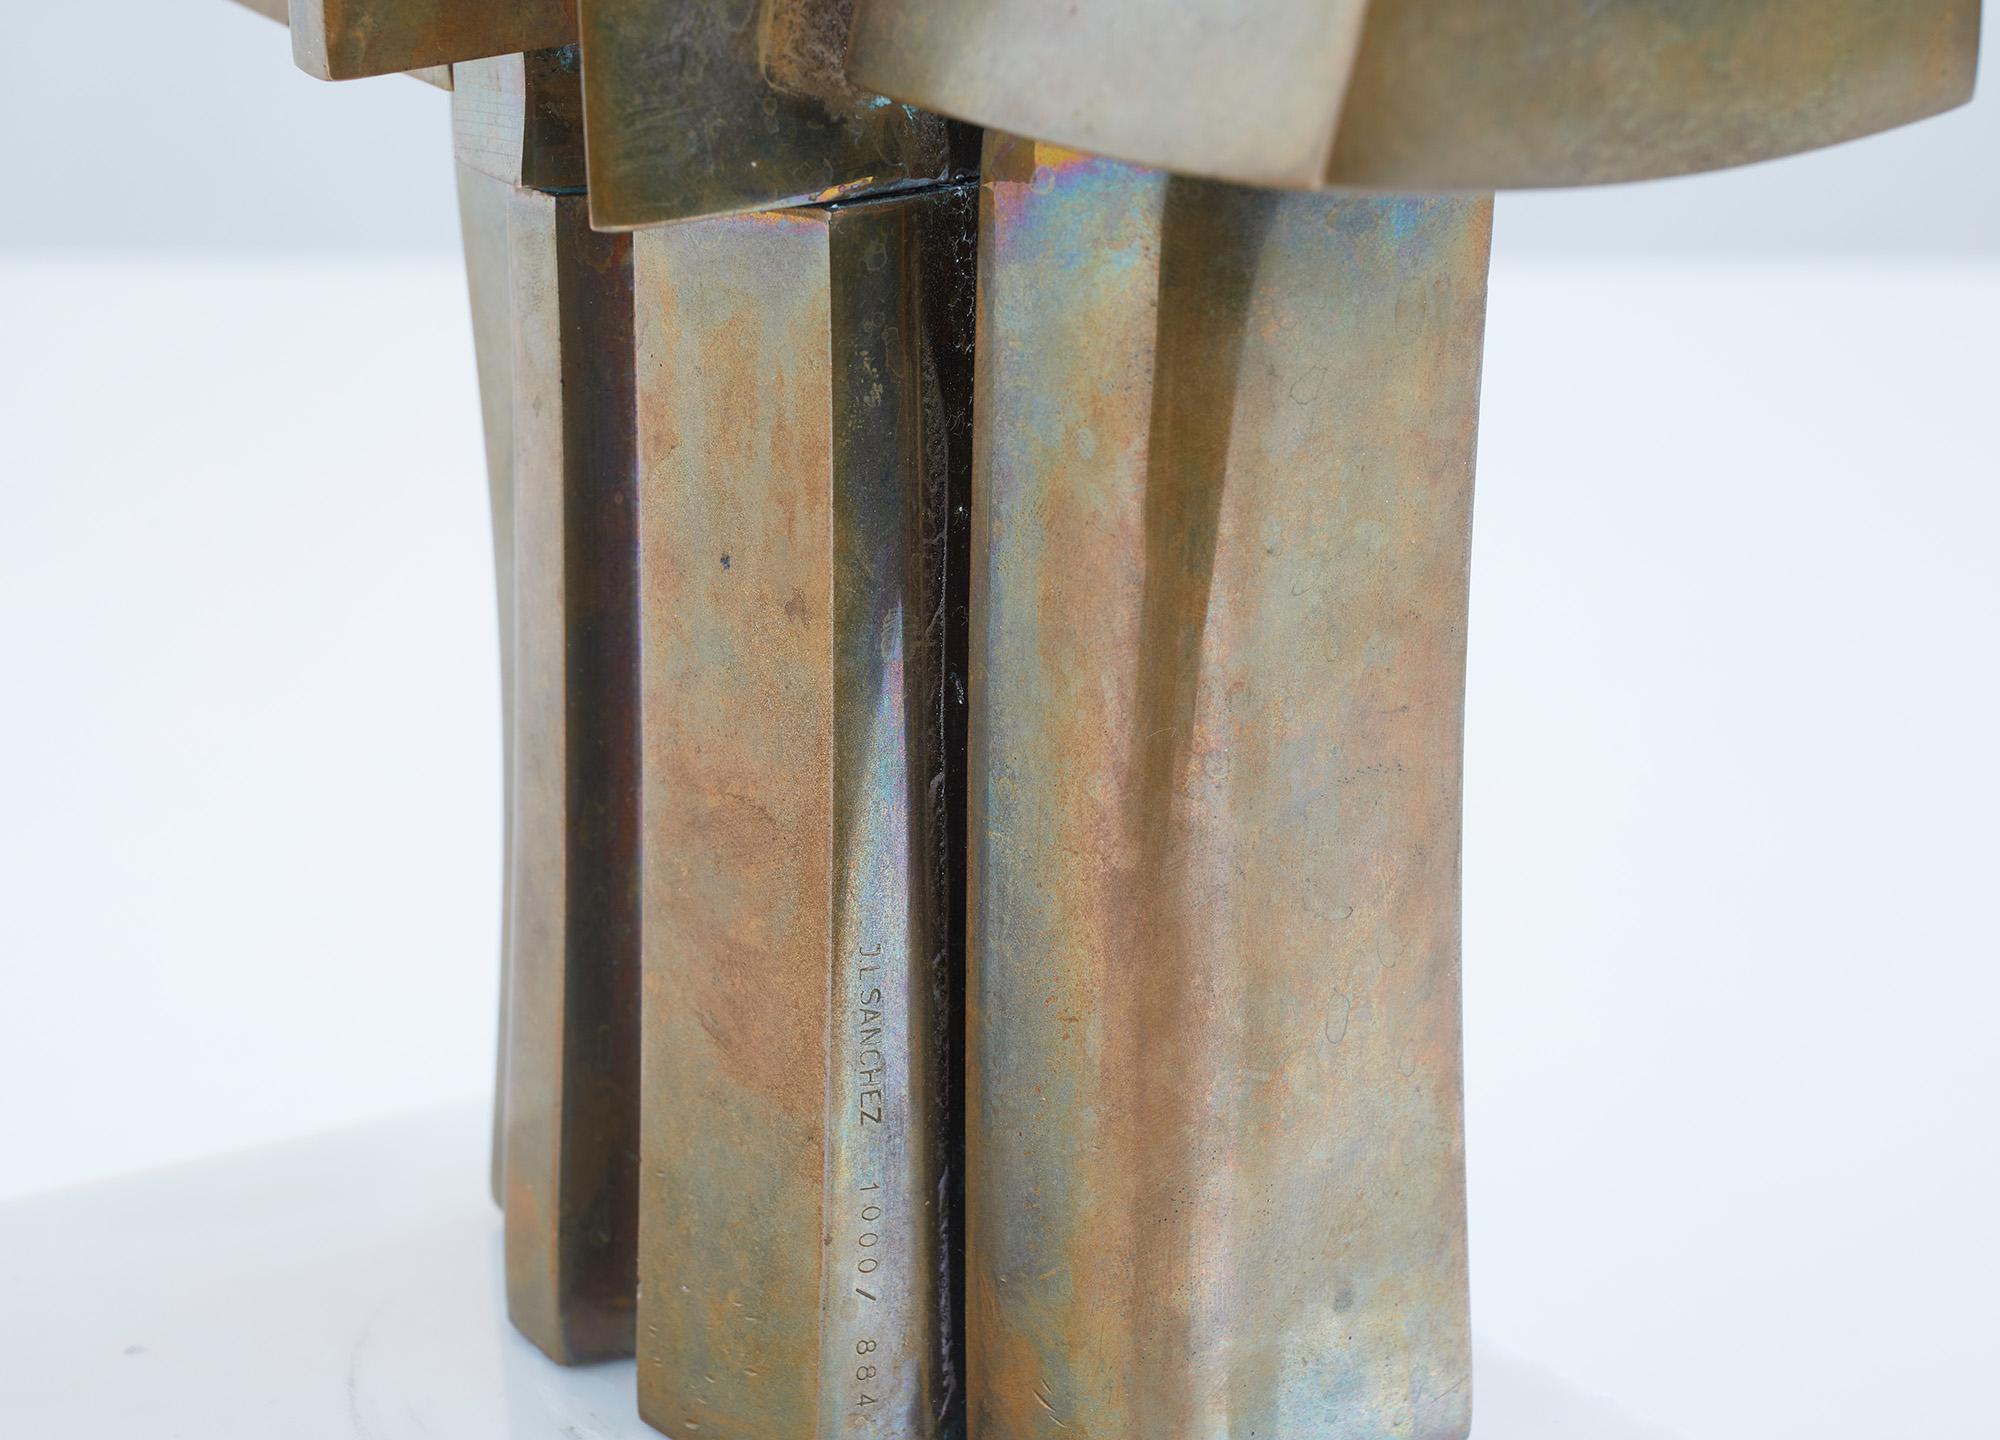 Polished bronze sculpture by José Luis Sanchez (1926-2018) 1